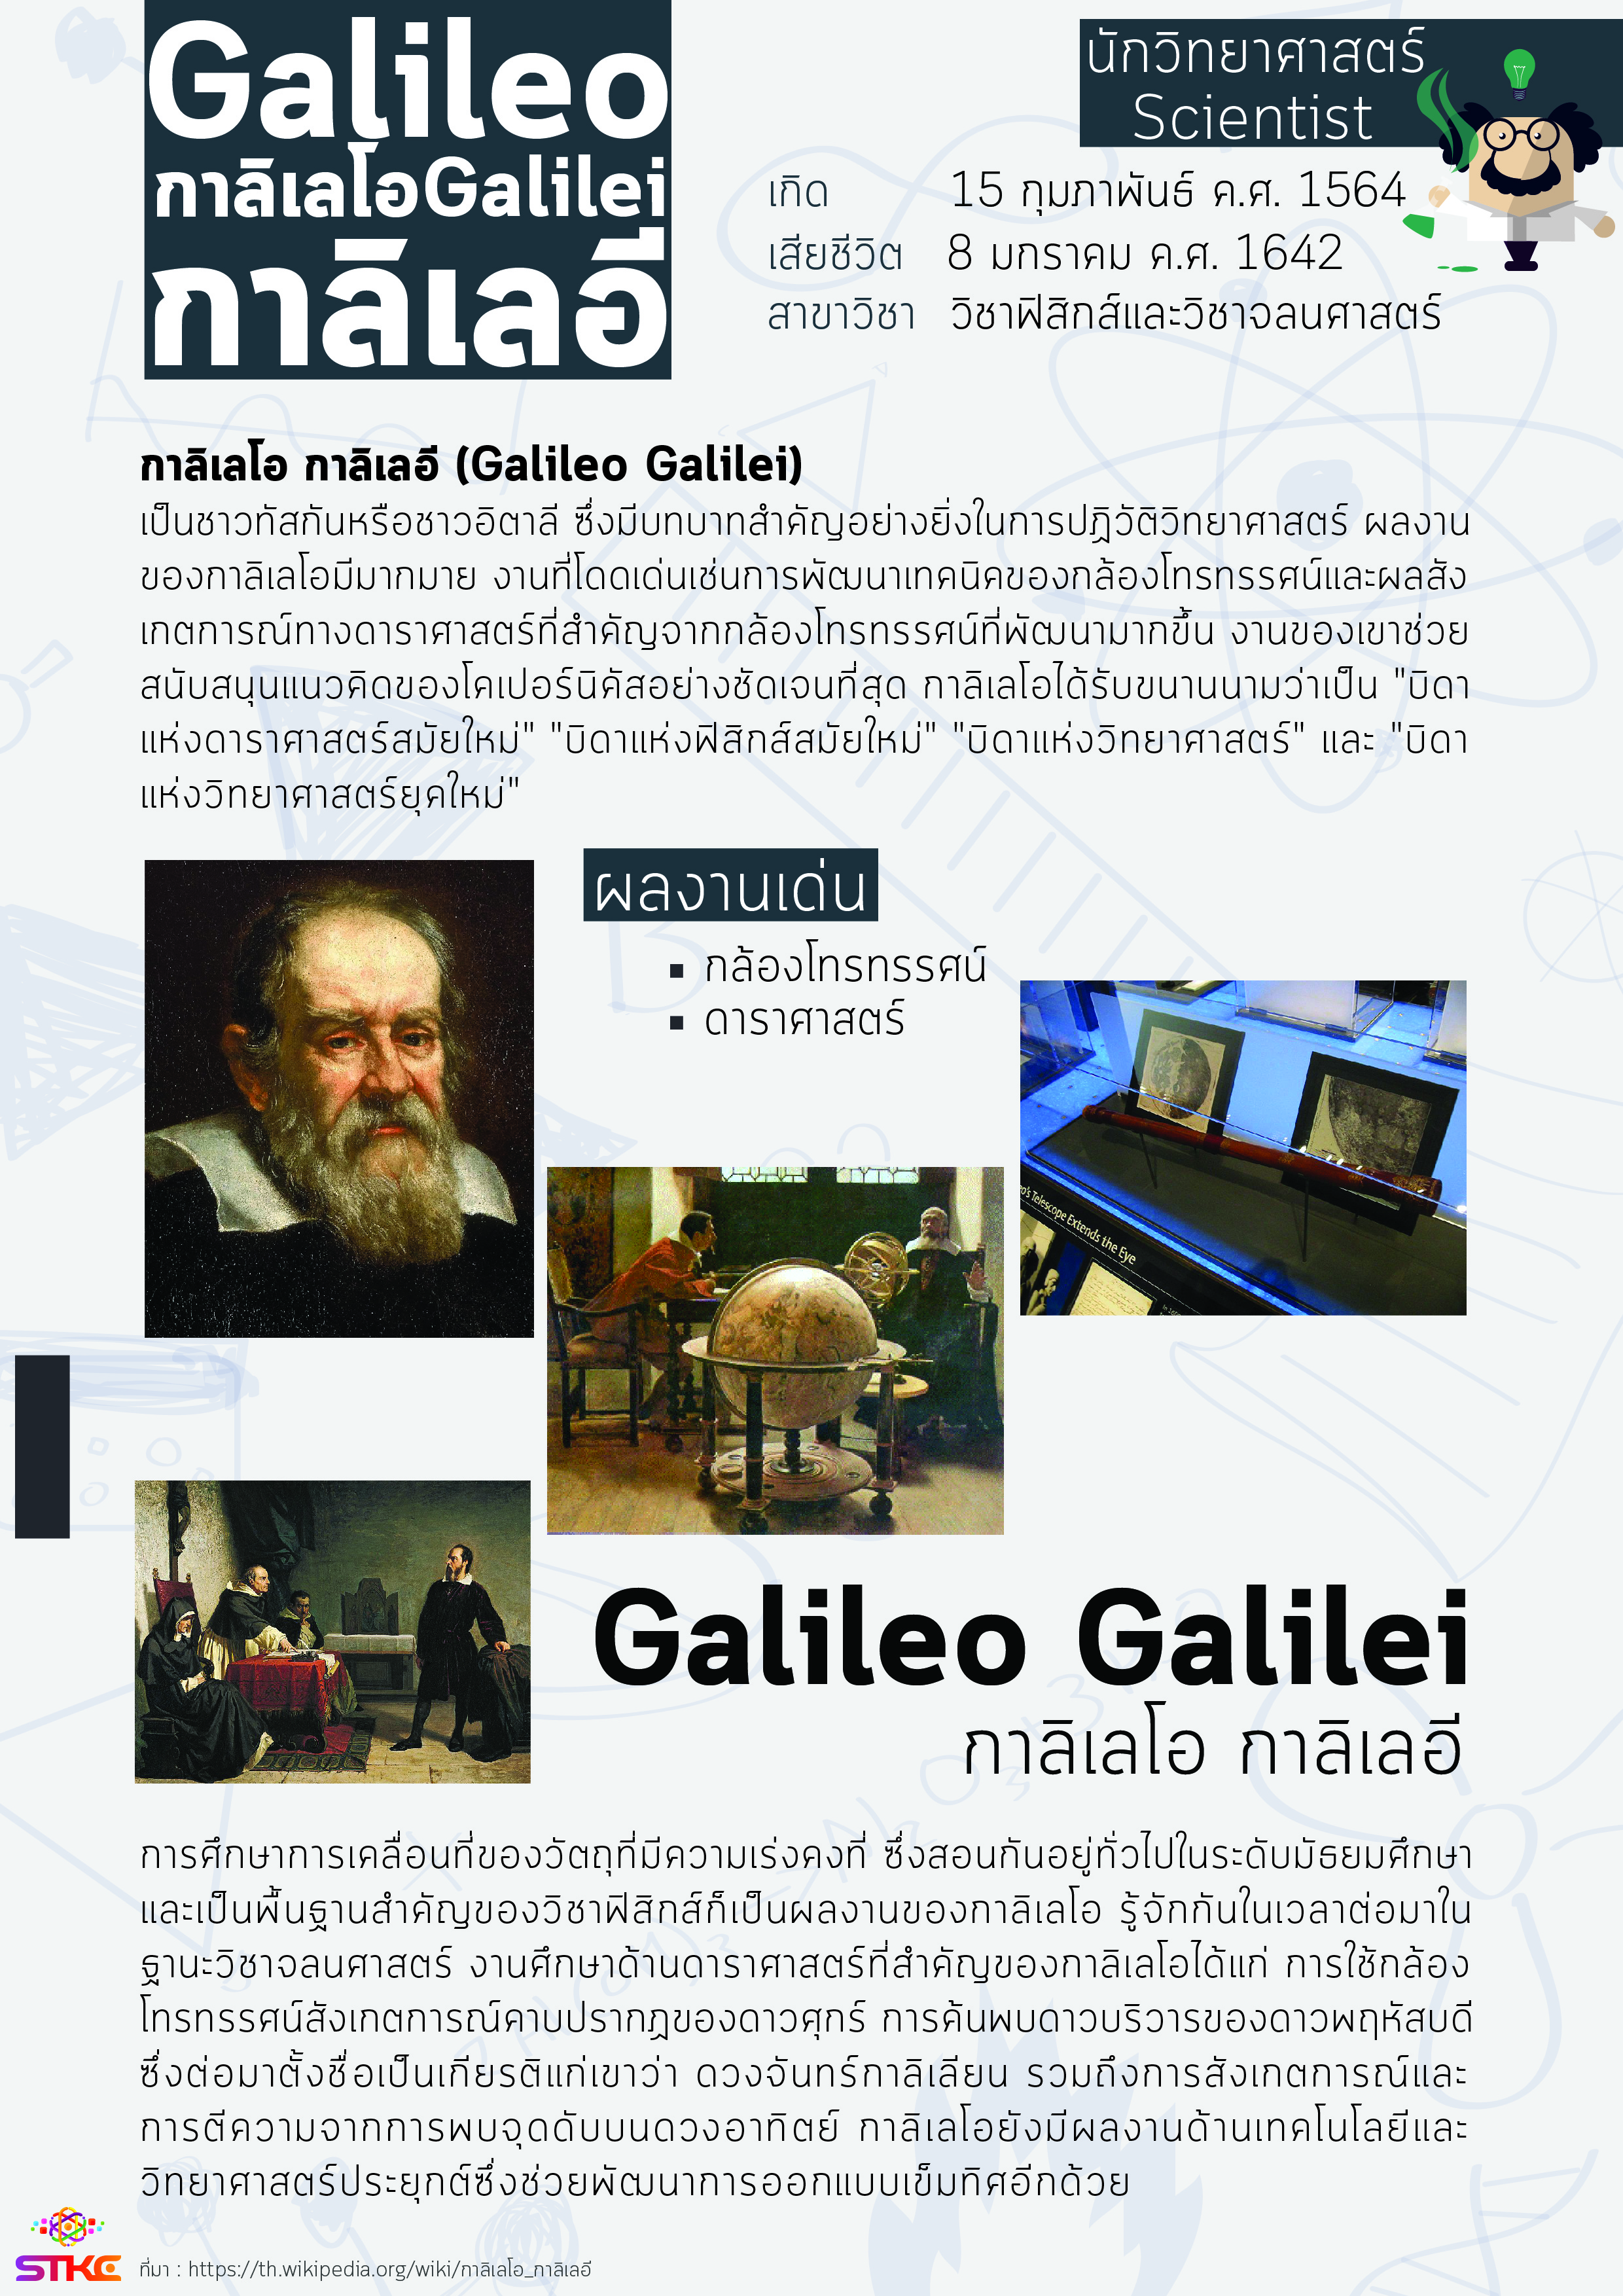 นักวิทยาศาสตร์ กาลิเลโอ กาลิเลอี (Galileo Galilei)